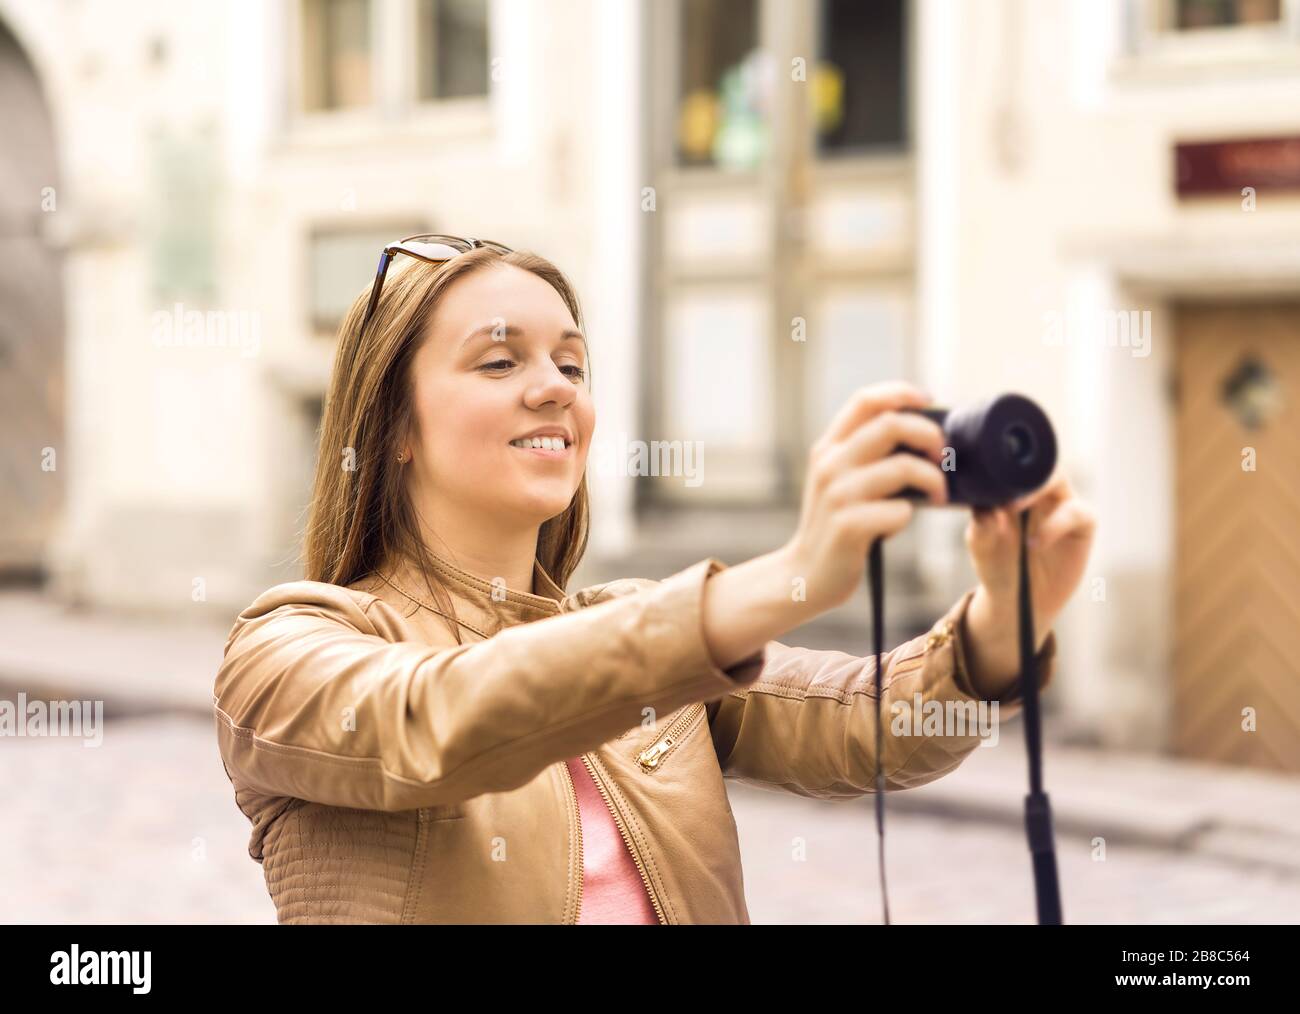 Donna sorridente che scatta foto con la fotocamera digitale nella vecchia strada della città. Foto delle vacanze in vacanza. Concetto di fotografia di viaggio. Foto Stock